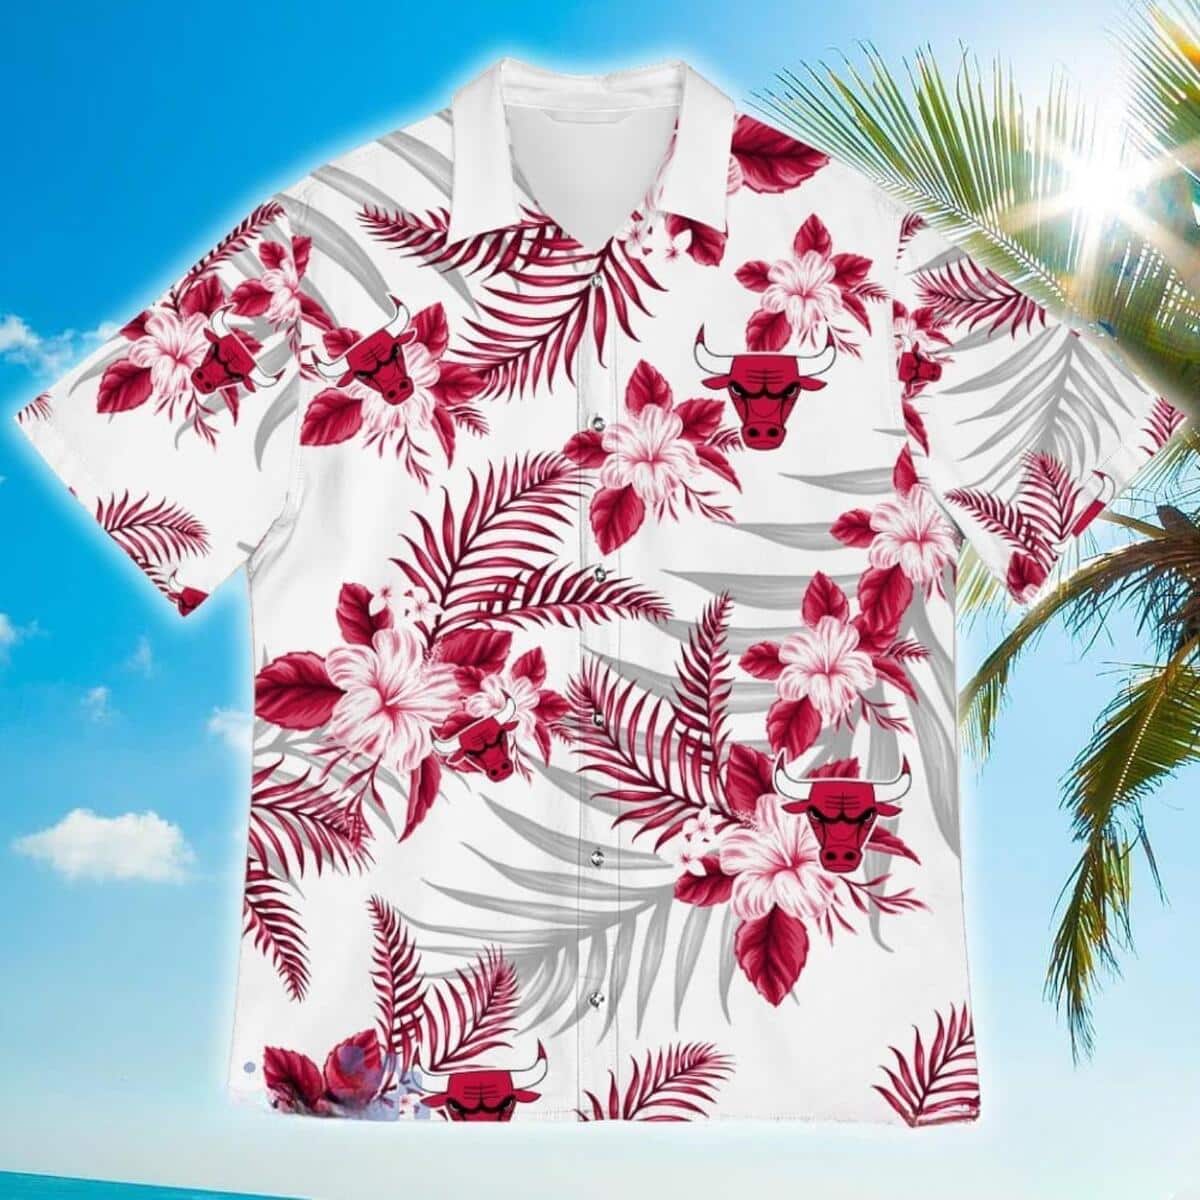 Chicago Bulls Hawaiian Shirt Tropical Flower Patterns Beach Lovers Gift